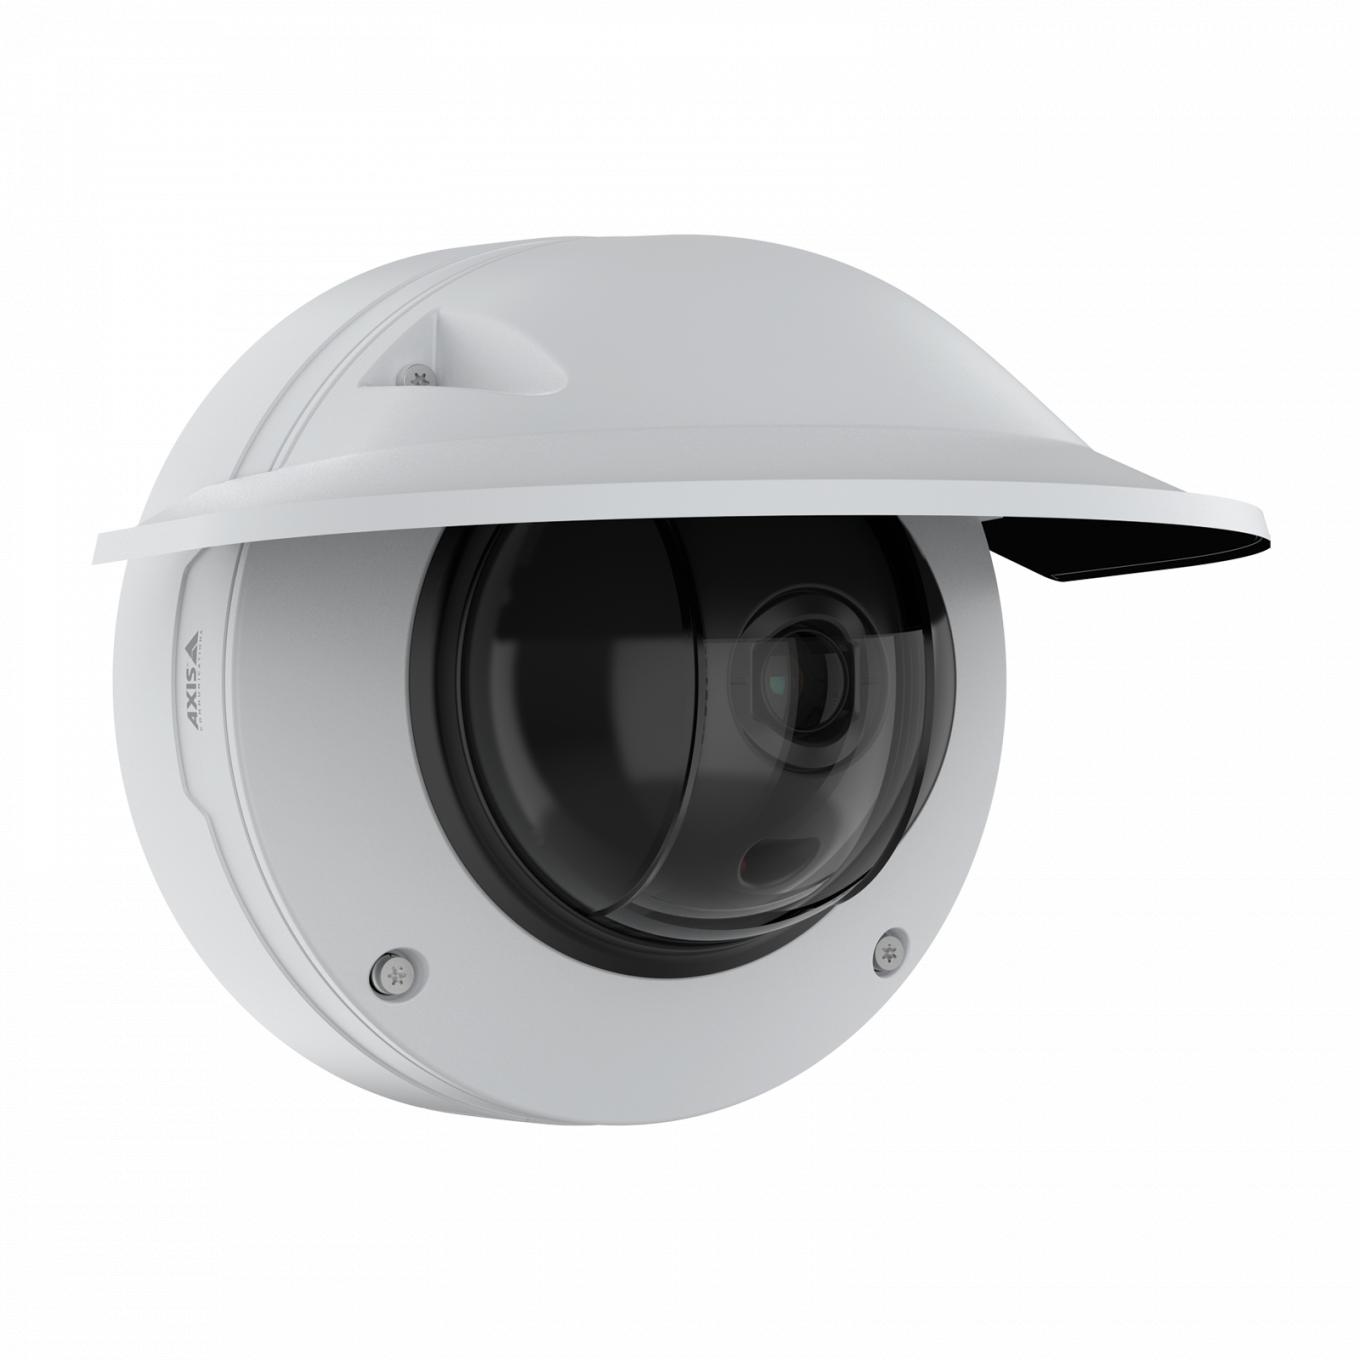 AXIS Q3536-LVE Dome Camera con schermo di protezione dalle intemperie, vista dall'angolo destro